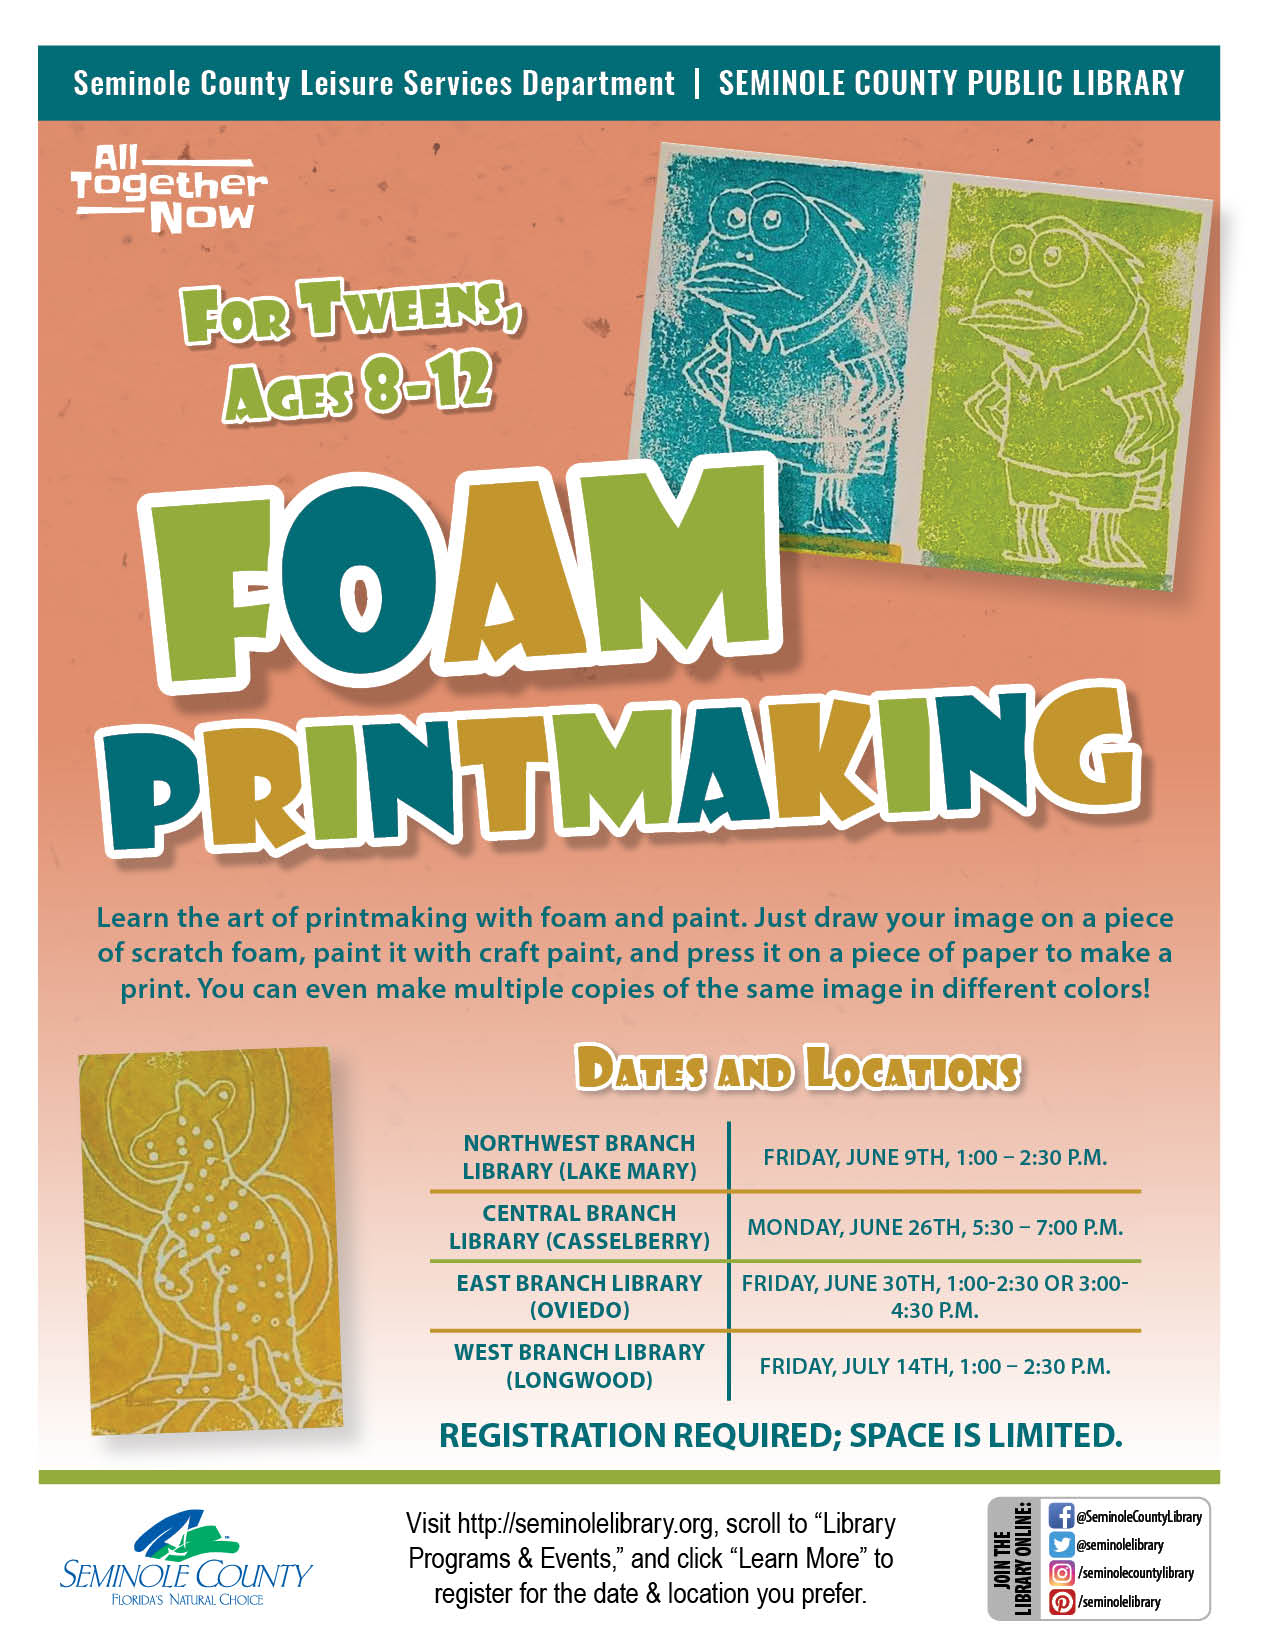 Foam Printmaking for Tweens